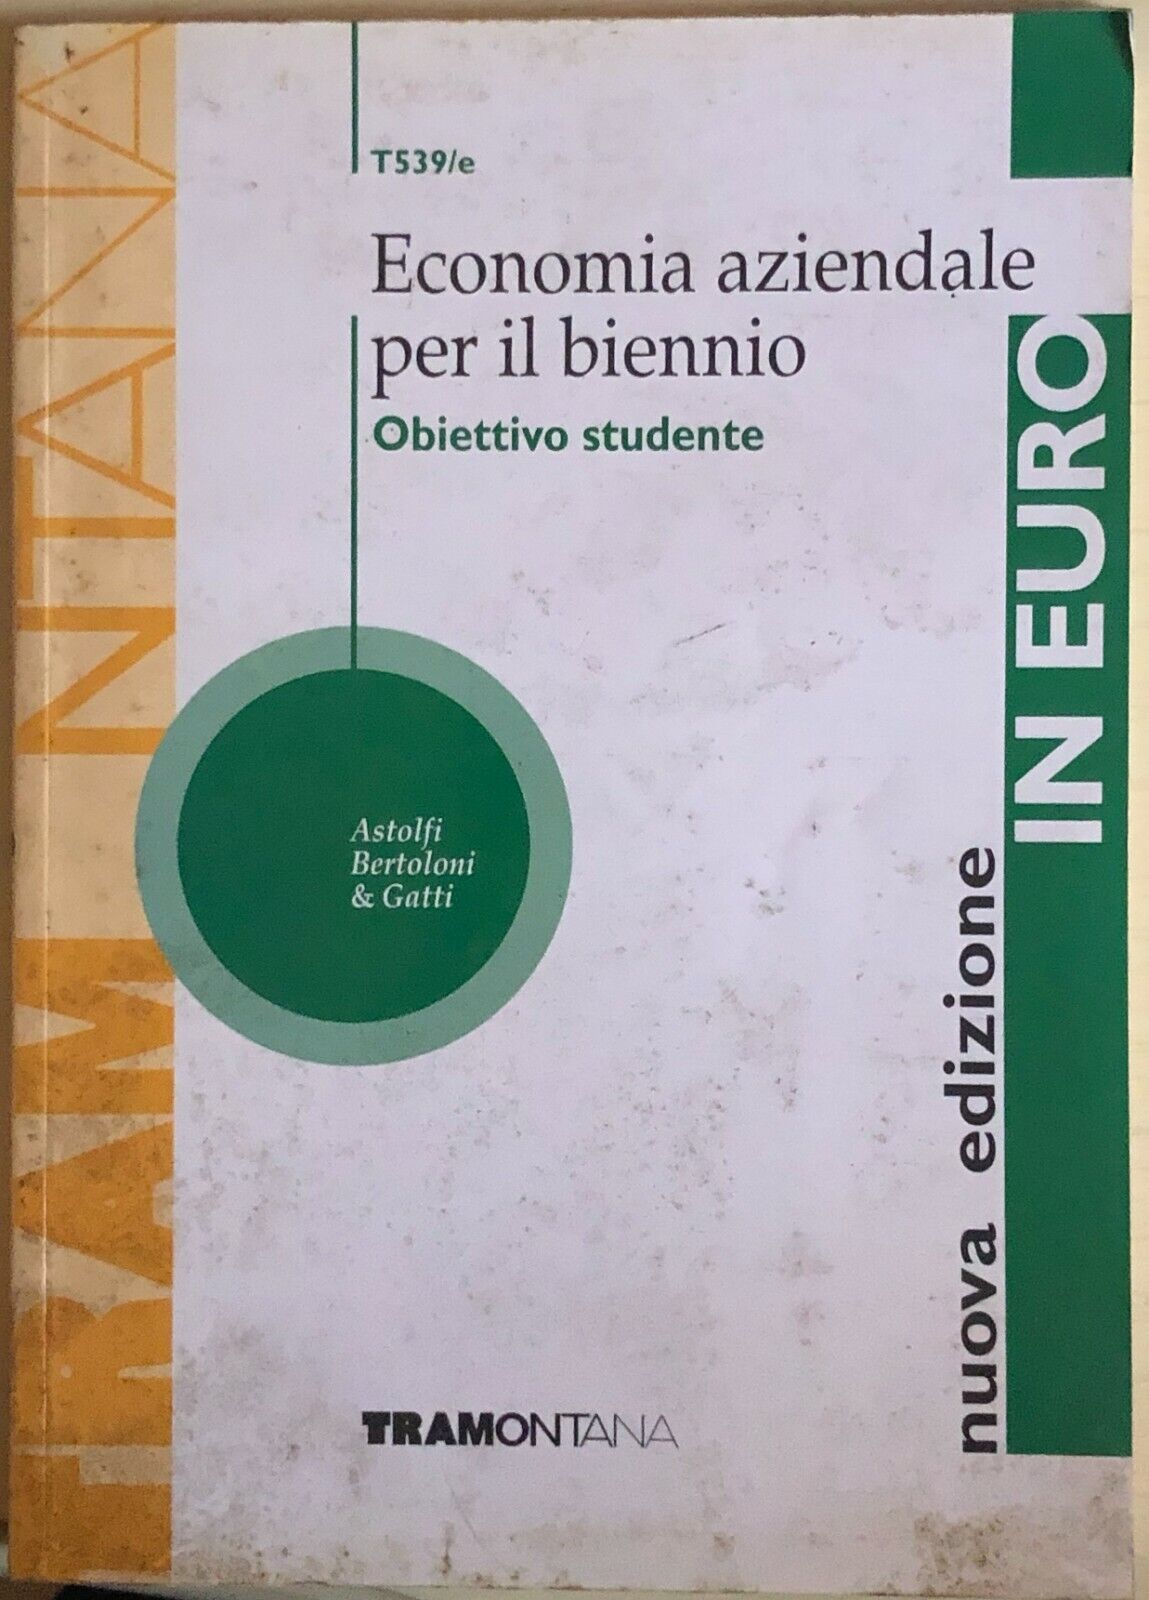 Economia aziendale per il biennio di AA.VV., 1999, Tramontana